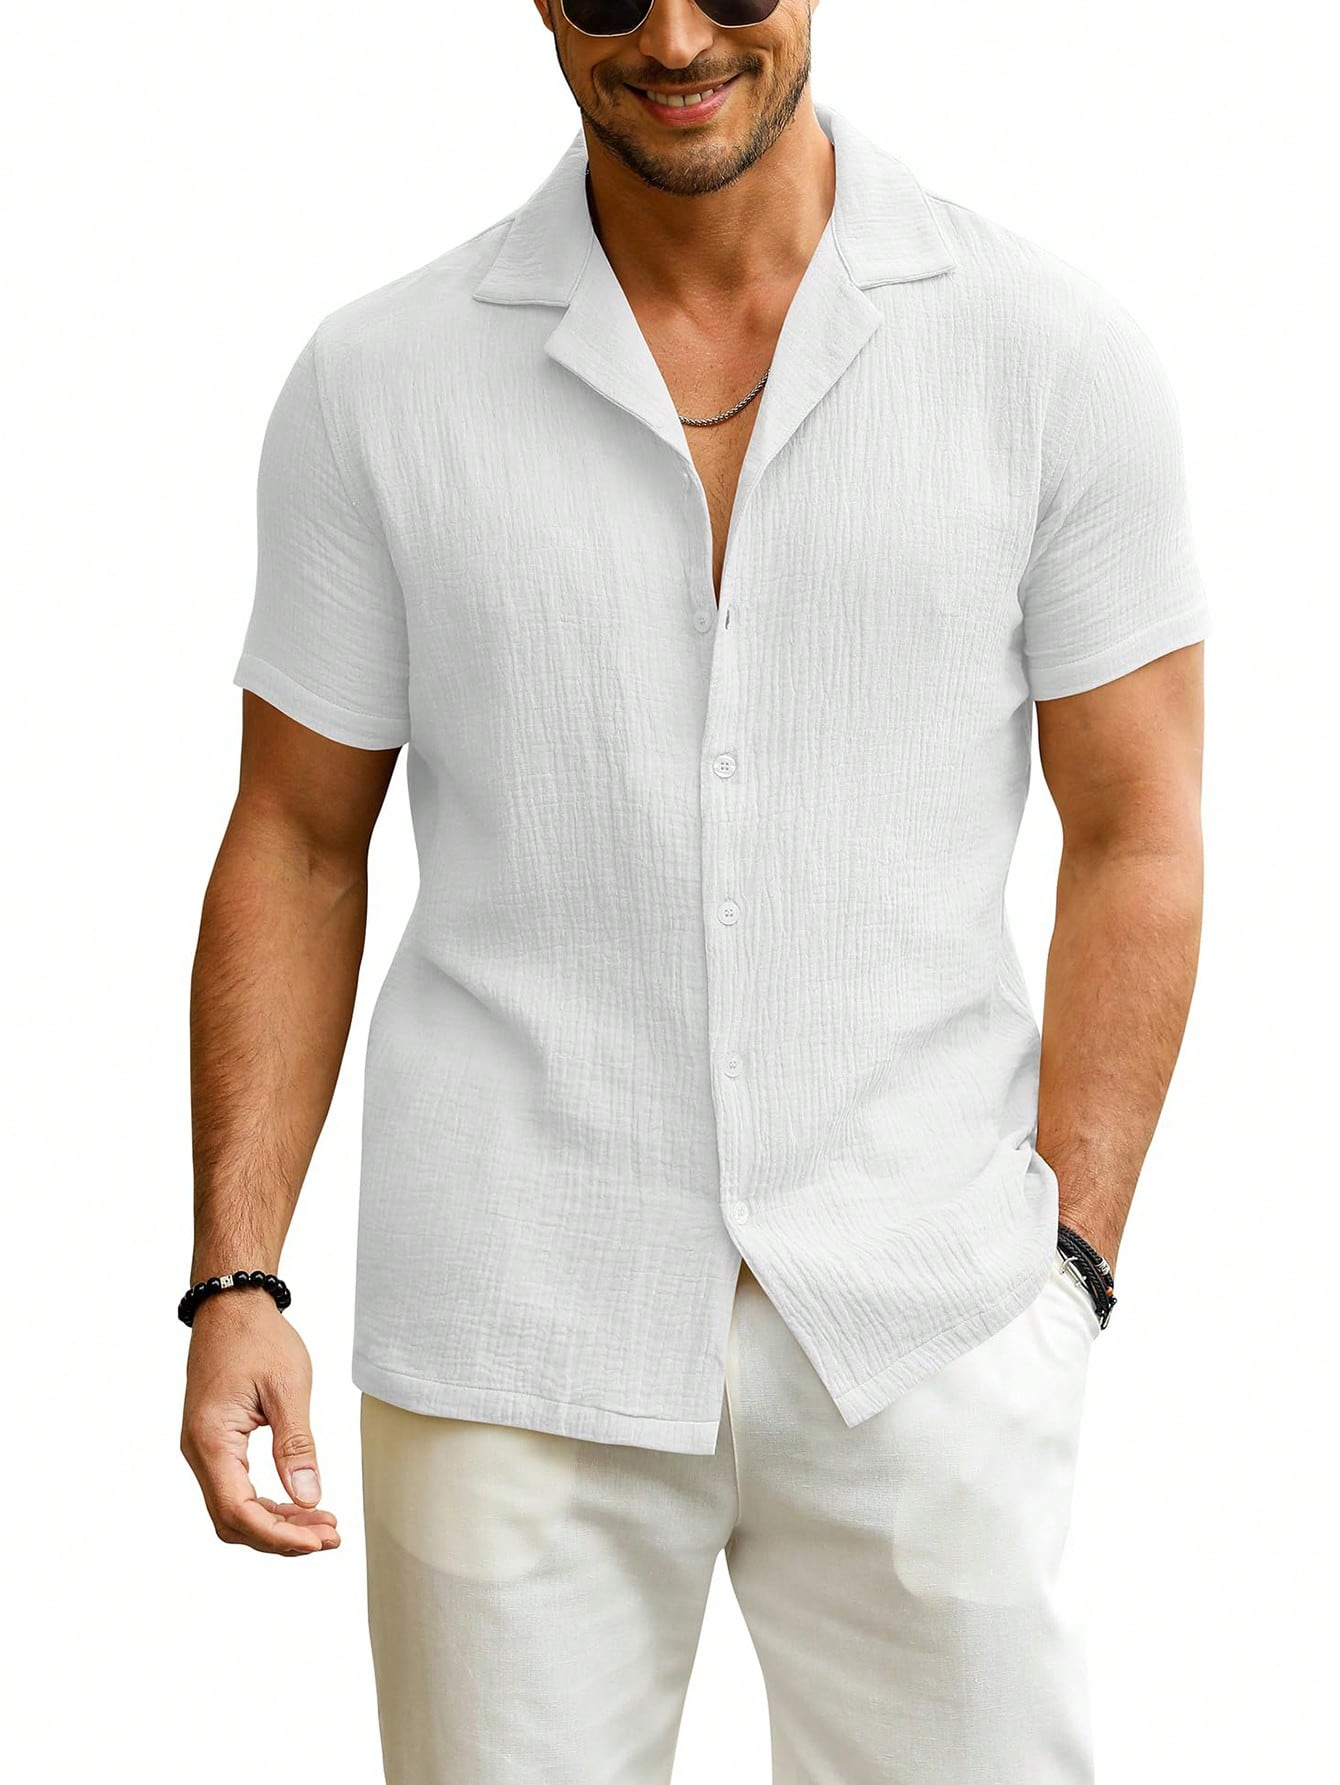 Мужская рубашка с коротким рукавом на пуговицах и воротником для летнего пляжа, белый мужская повседневная рубашка с коротким рукавом на пуговицах бежевый